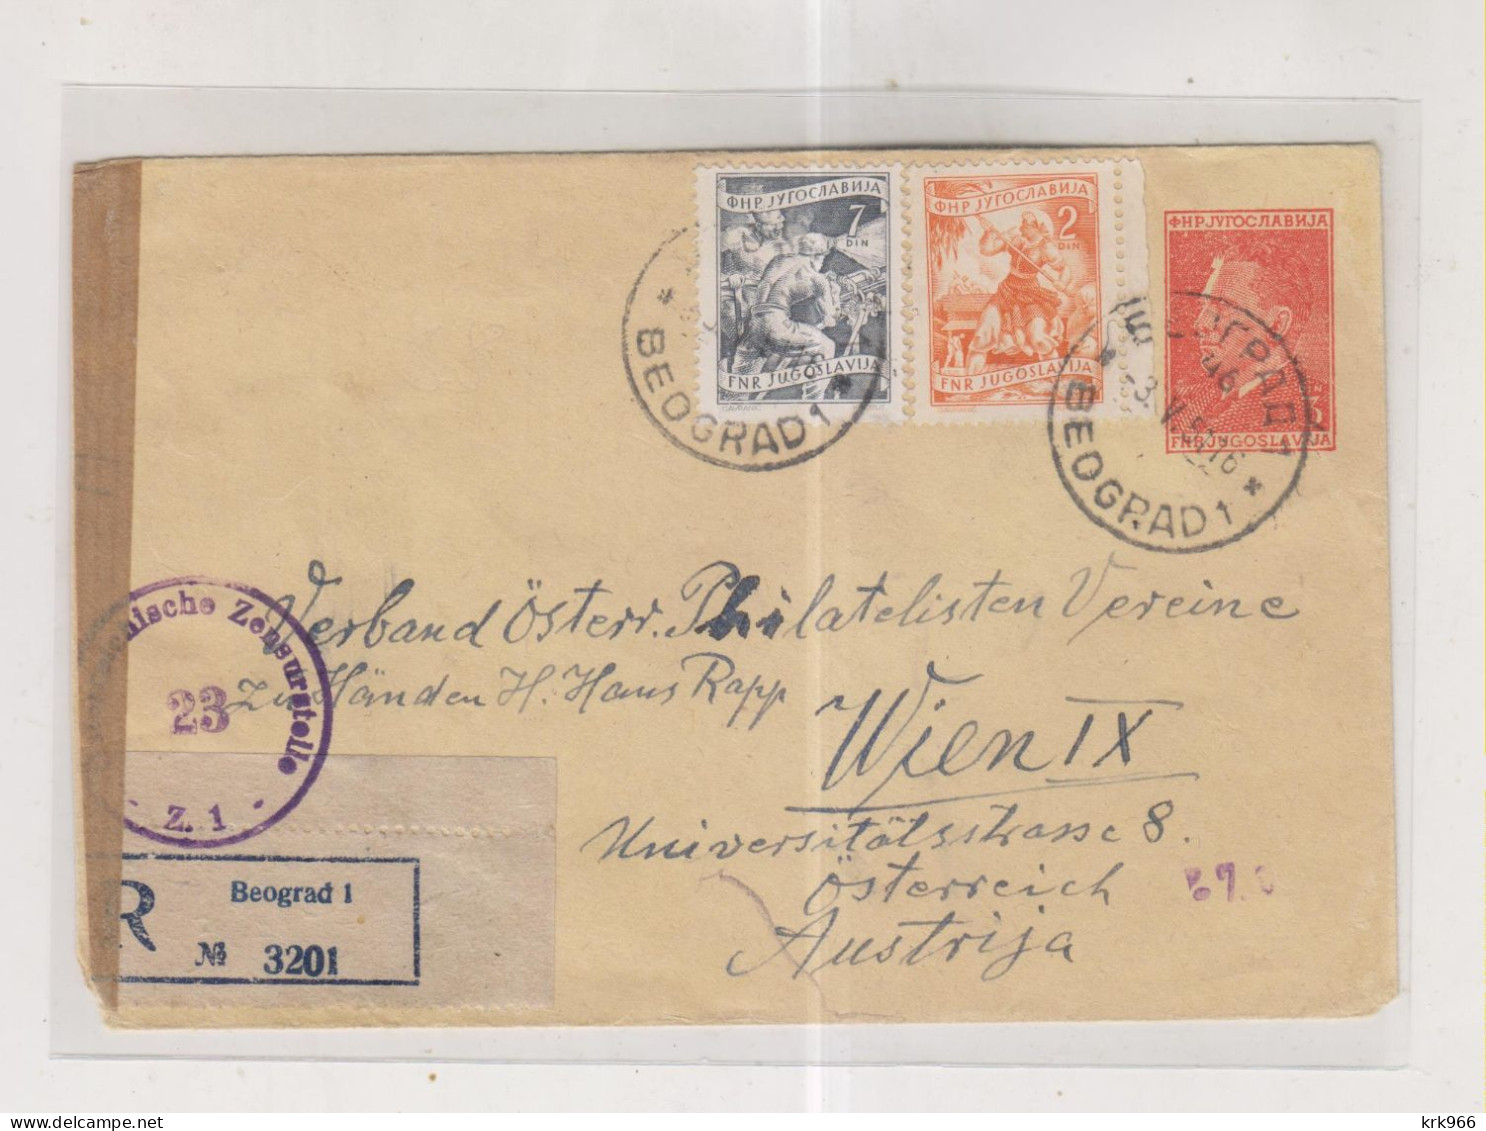 YUGOSLAVIA,1951 BEOGRAD Registered  Censored Postal Stationery Cover To Austria - Briefe U. Dokumente